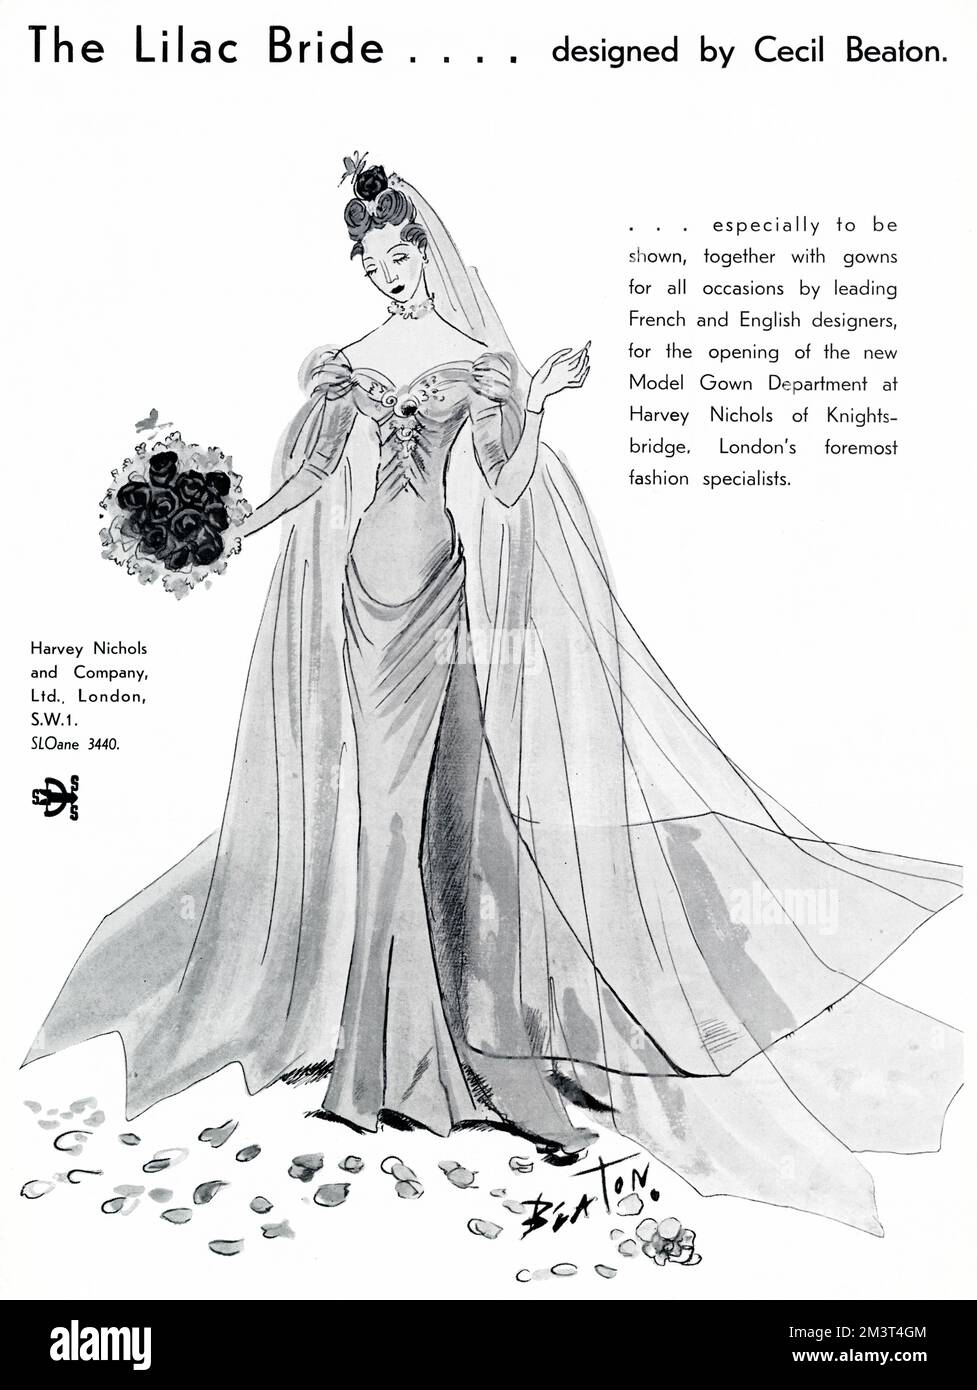 Publicité pour Harvey Nichols Model Gown département, avec un design, la mariée de Lilac, conçu par Cecil Beaton, montré, aux côtés de 'robes pour toutes les occasions par les grands designers français et anglais'. Banque D'Images